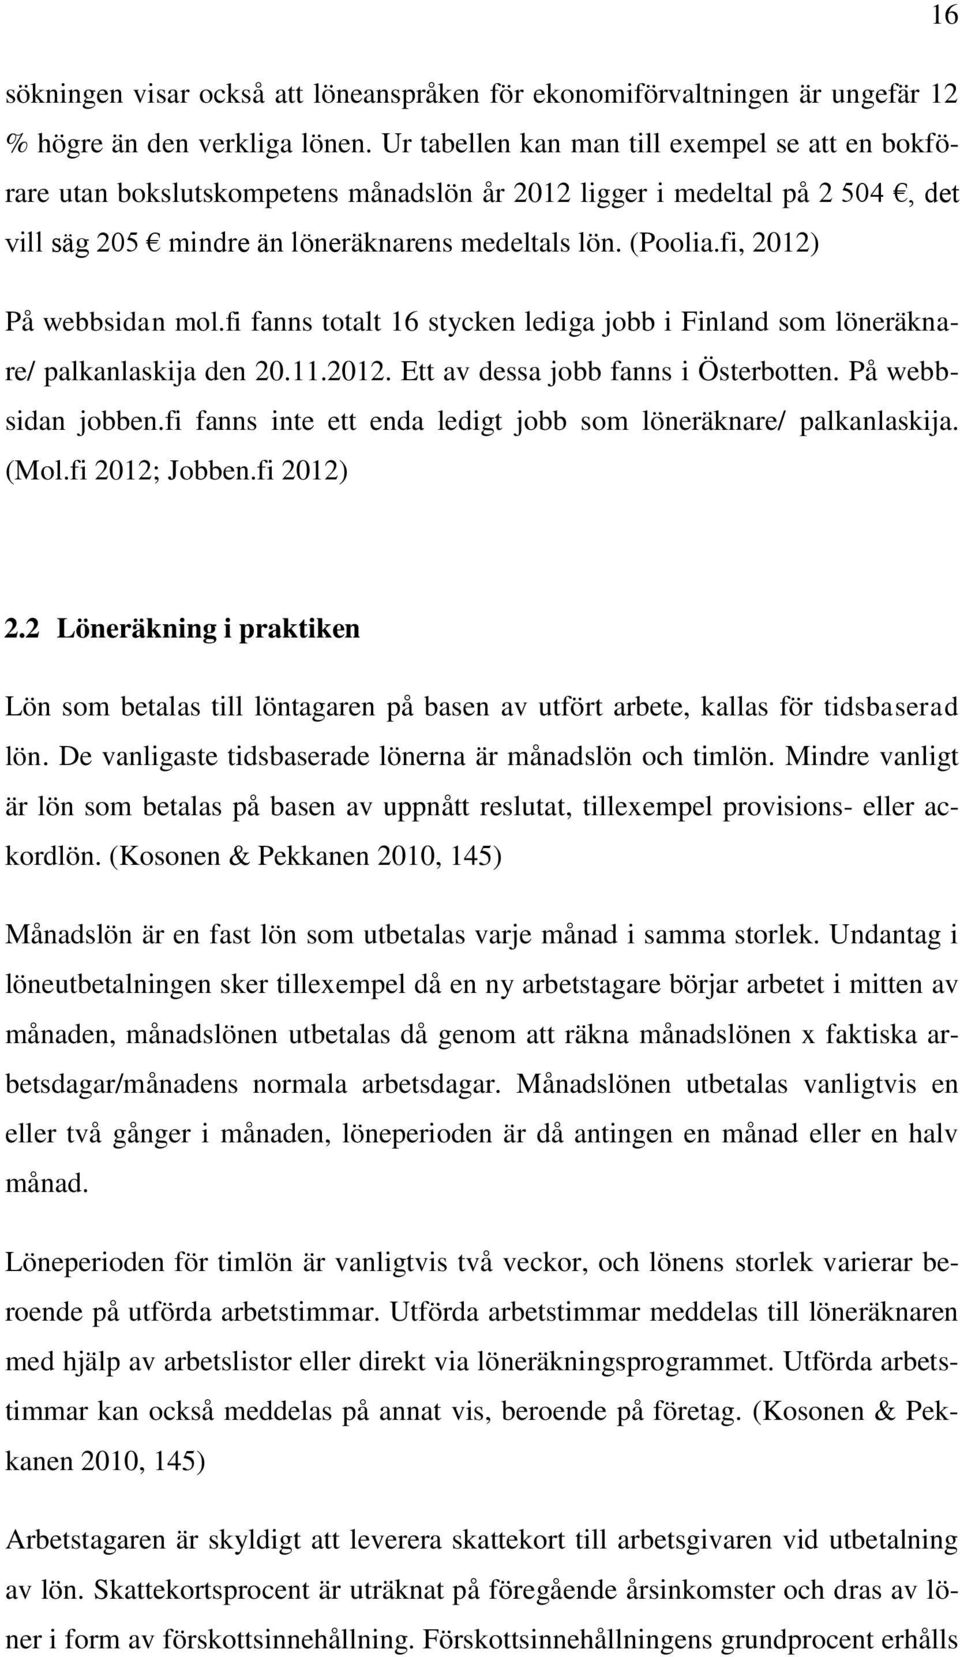 fi, 2012) På webbsidan mol.fi fanns totalt 16 stycken lediga jobb i Finland som löneräknare/ palkanlaskija den 20.11.2012. Ett av dessa jobb fanns i Österbotten. På webbsidan jobben.